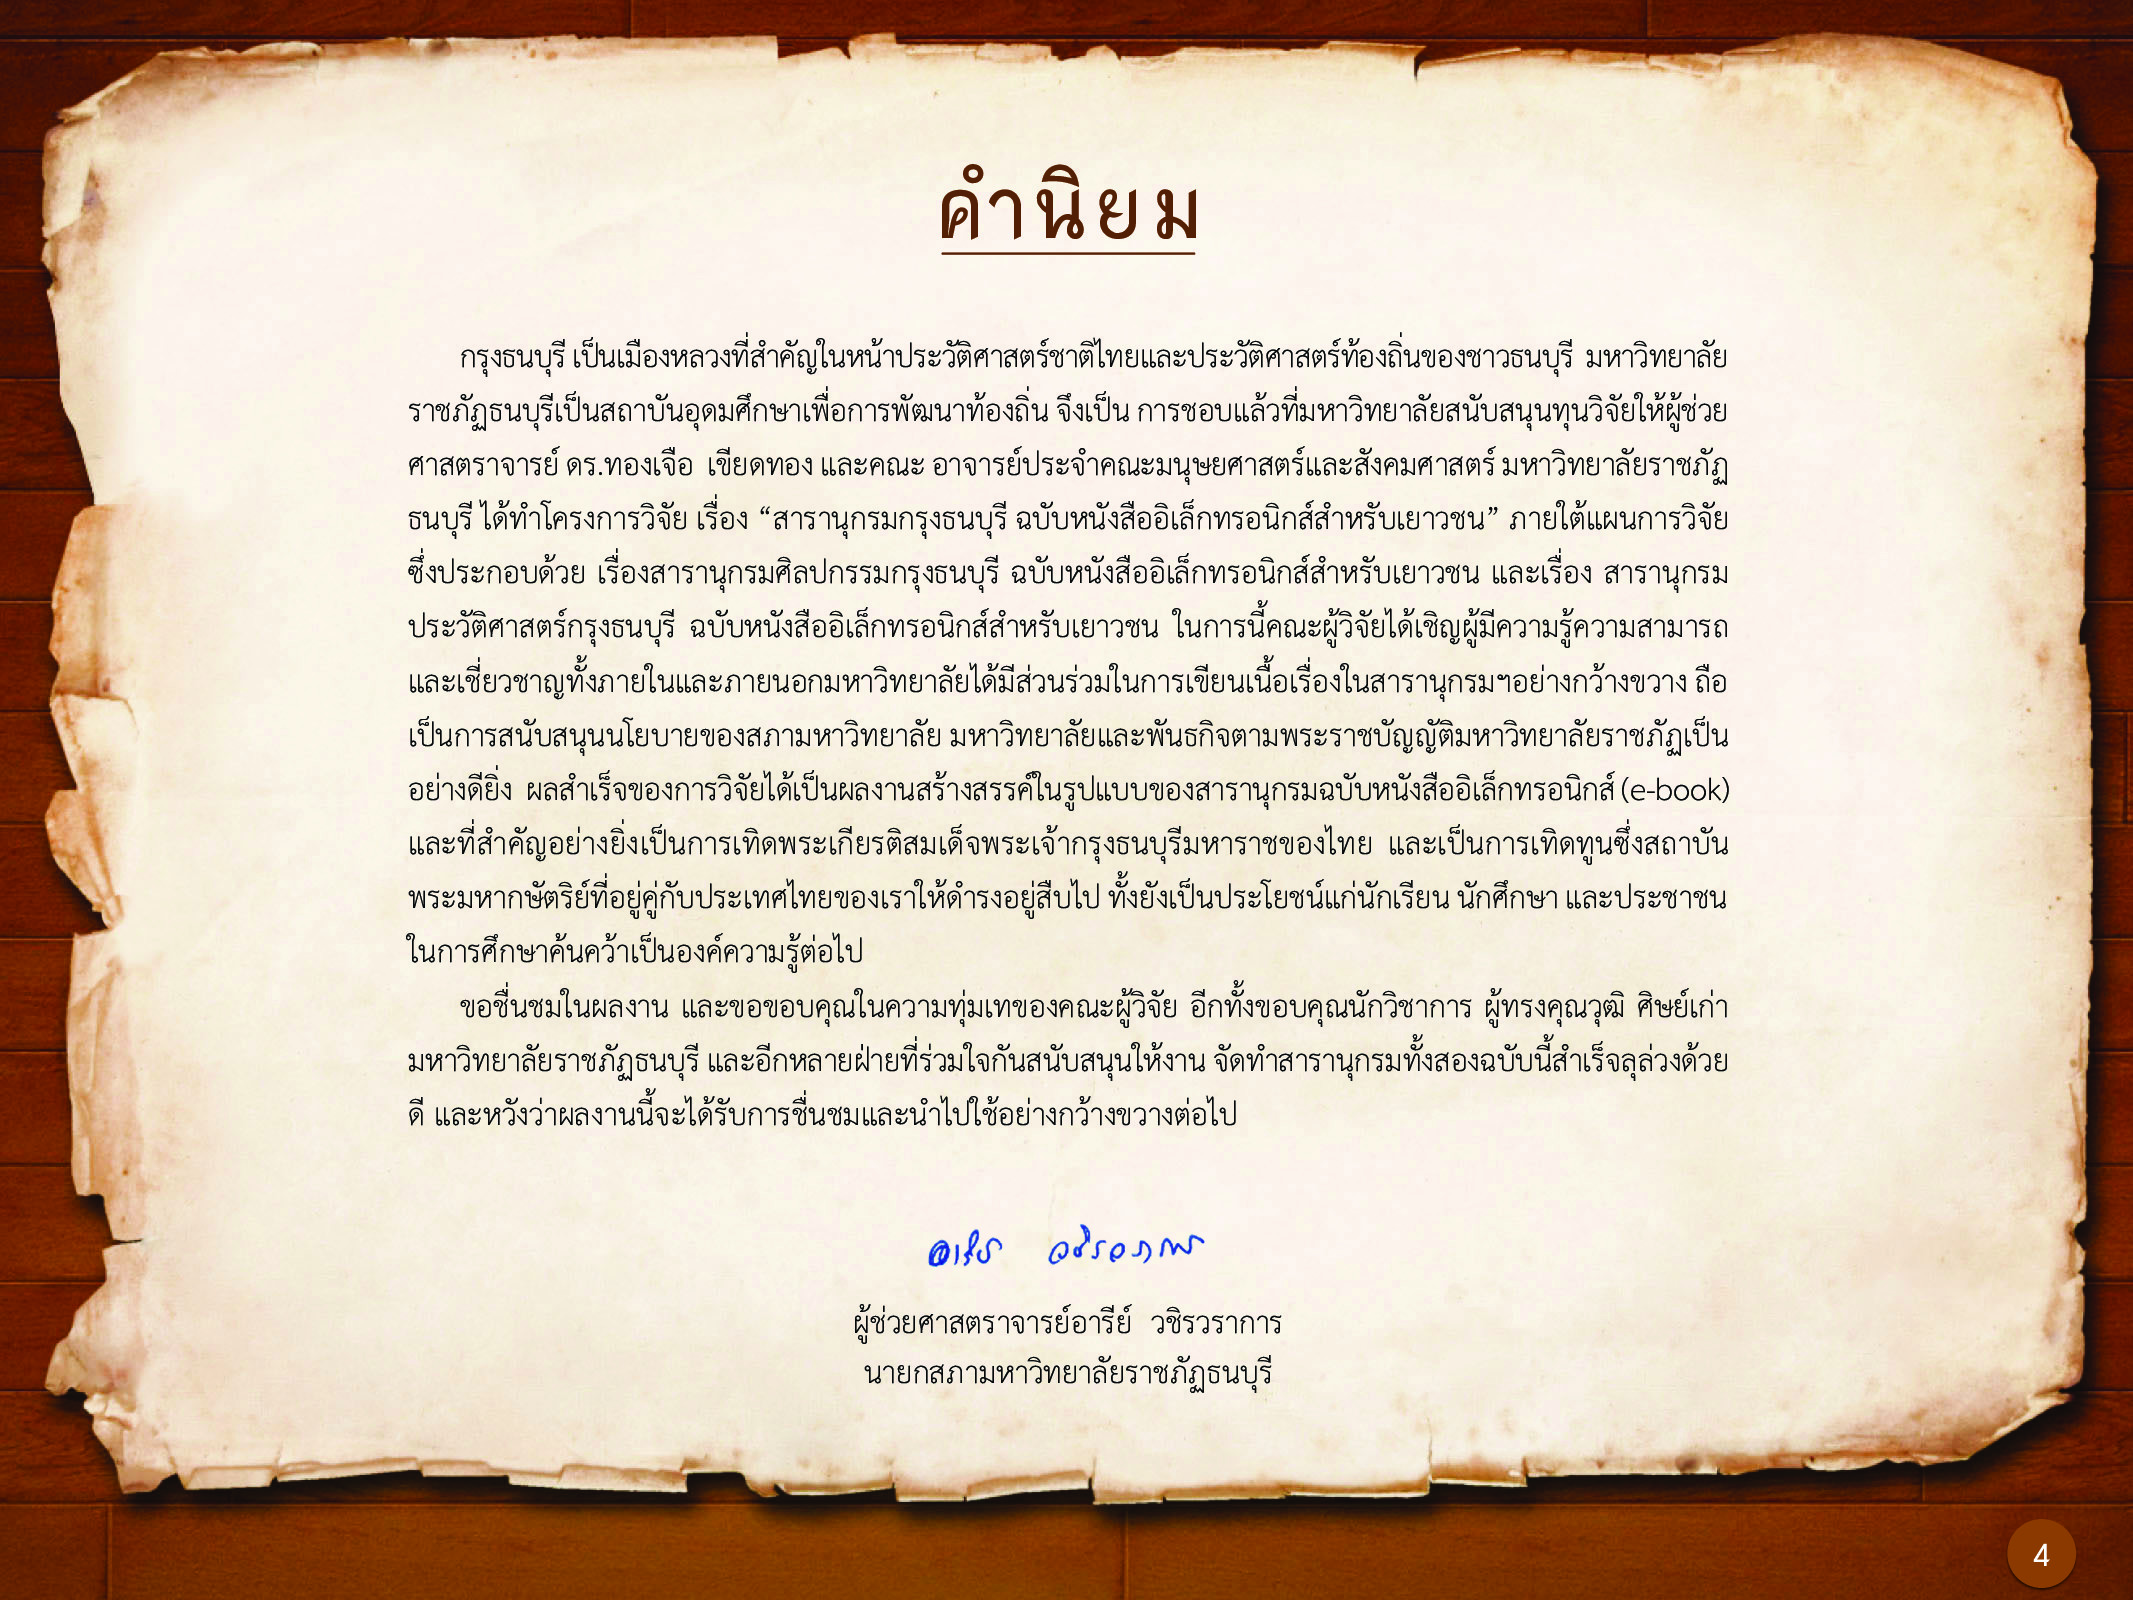 ประวัติศาสตร์กรุงธนบุรี ./images/history_dhonburi/4.jpg